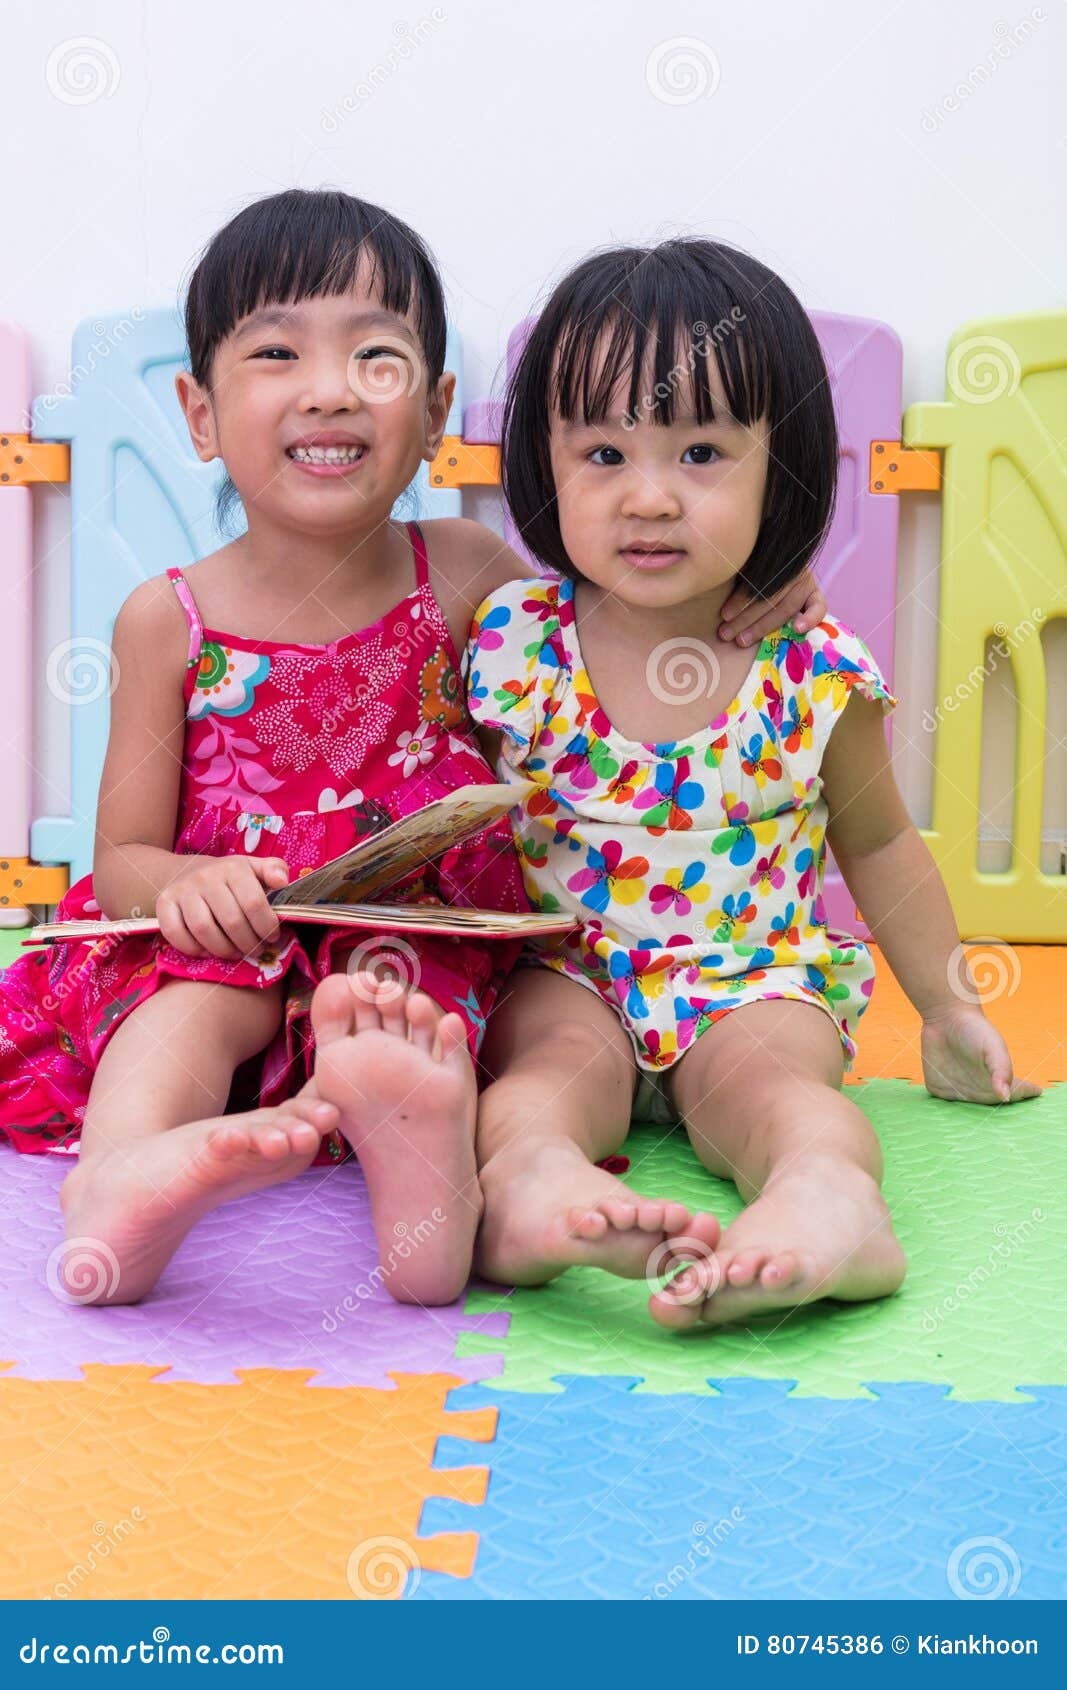 японская эротика с детьми фото 27